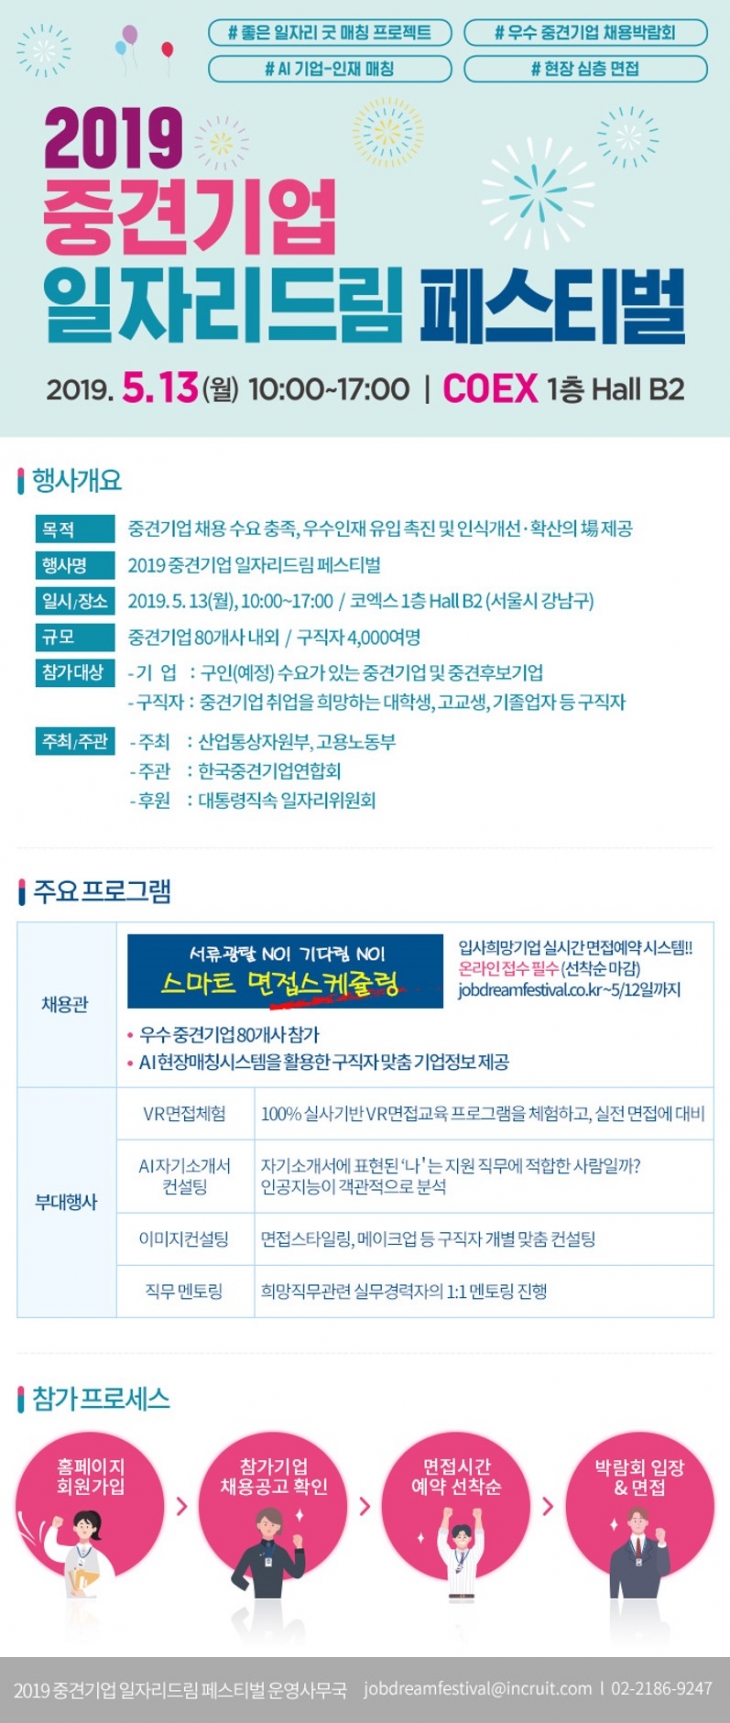 2019 중견기업 일자리드림 페스티벌 안내(5/13)